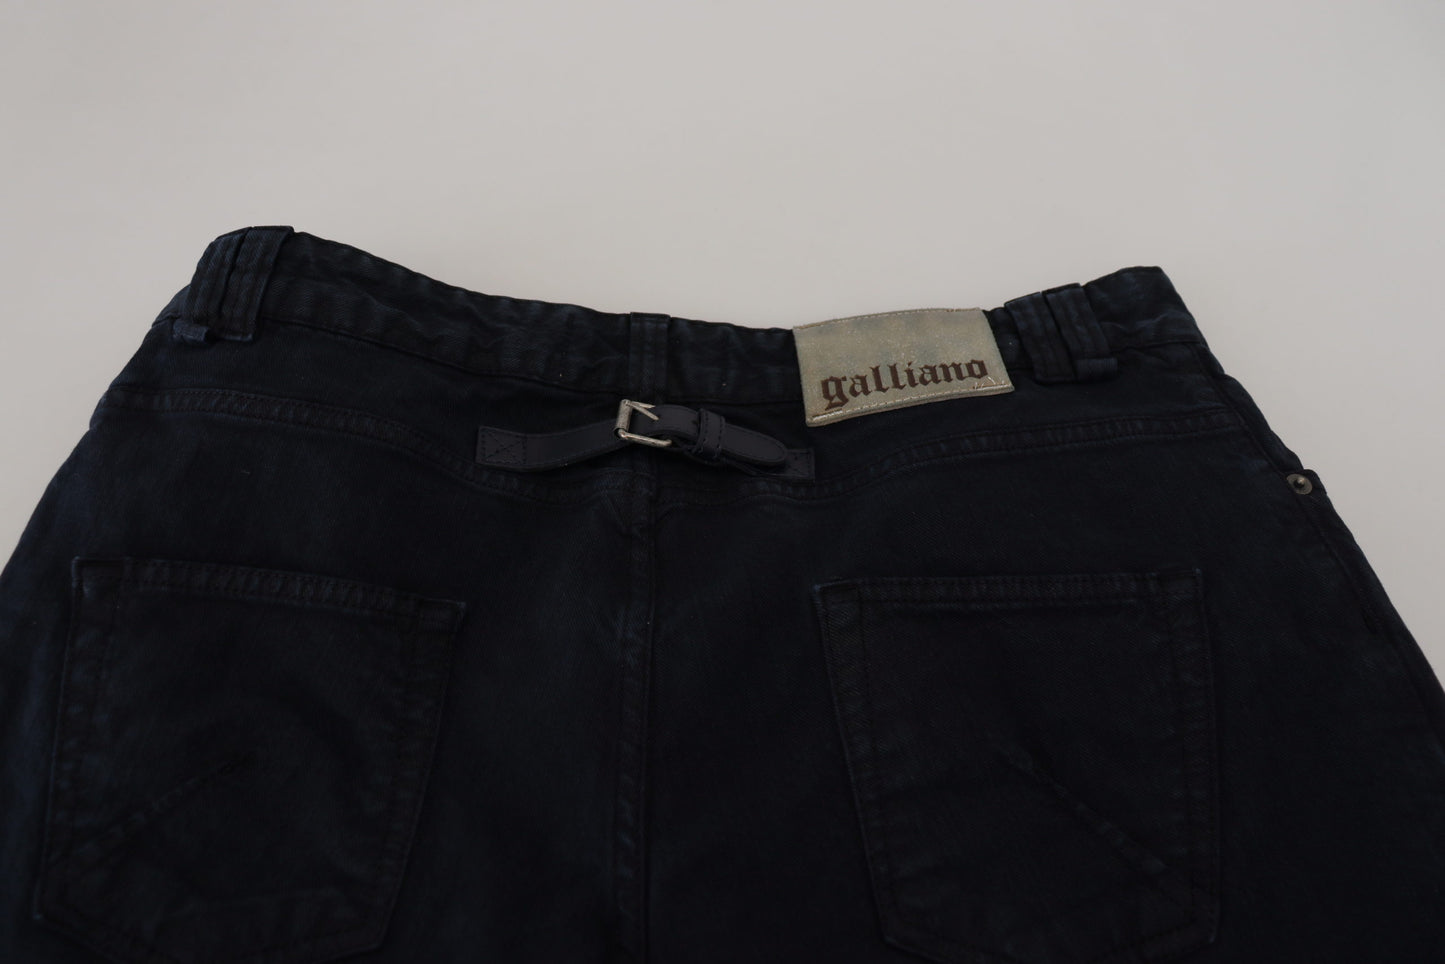 John Galliano Elegant Black Cotton Designer Jeans